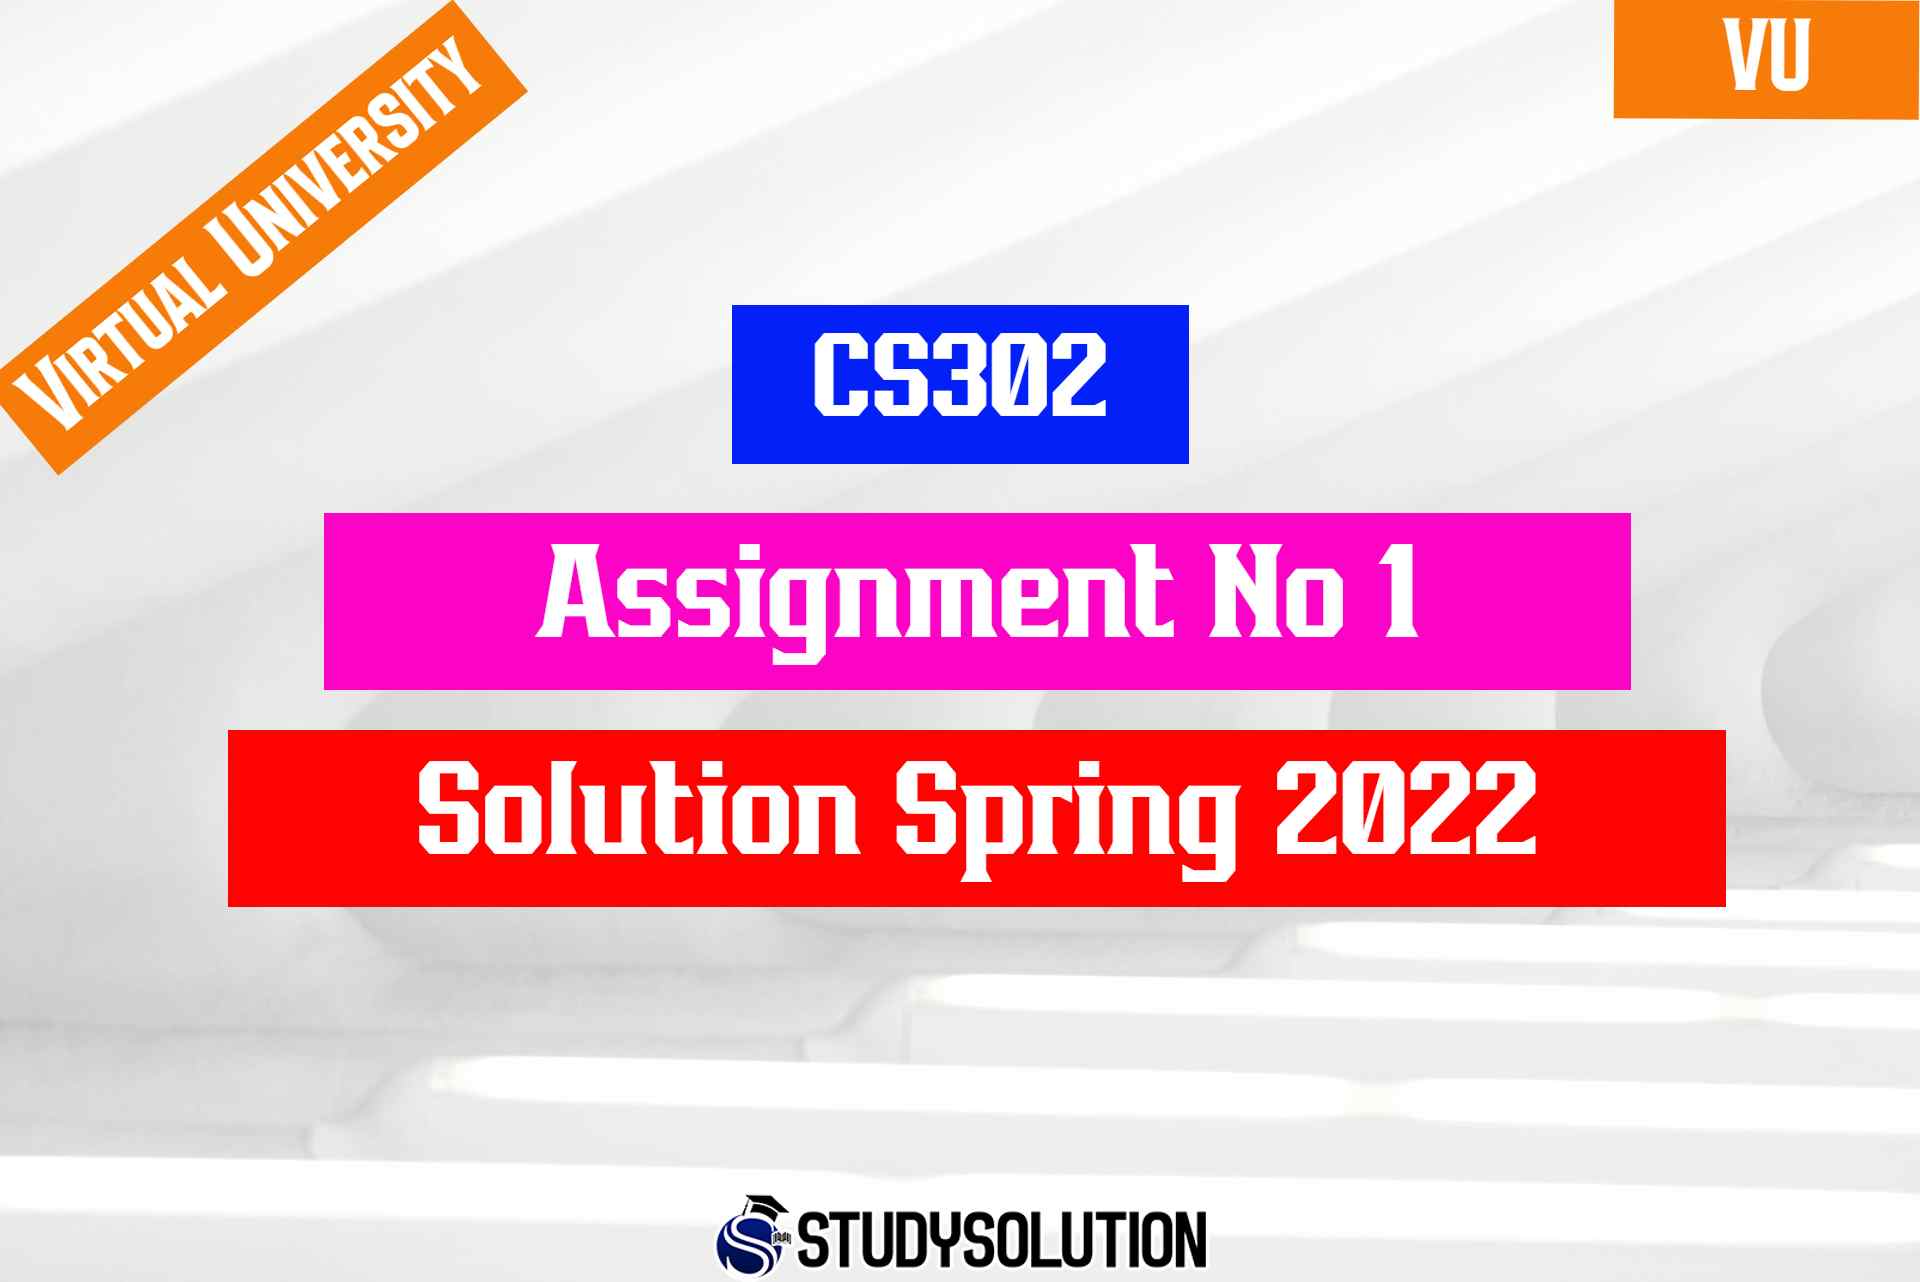 CS302 Assignment No 1 Solution Spring 2022